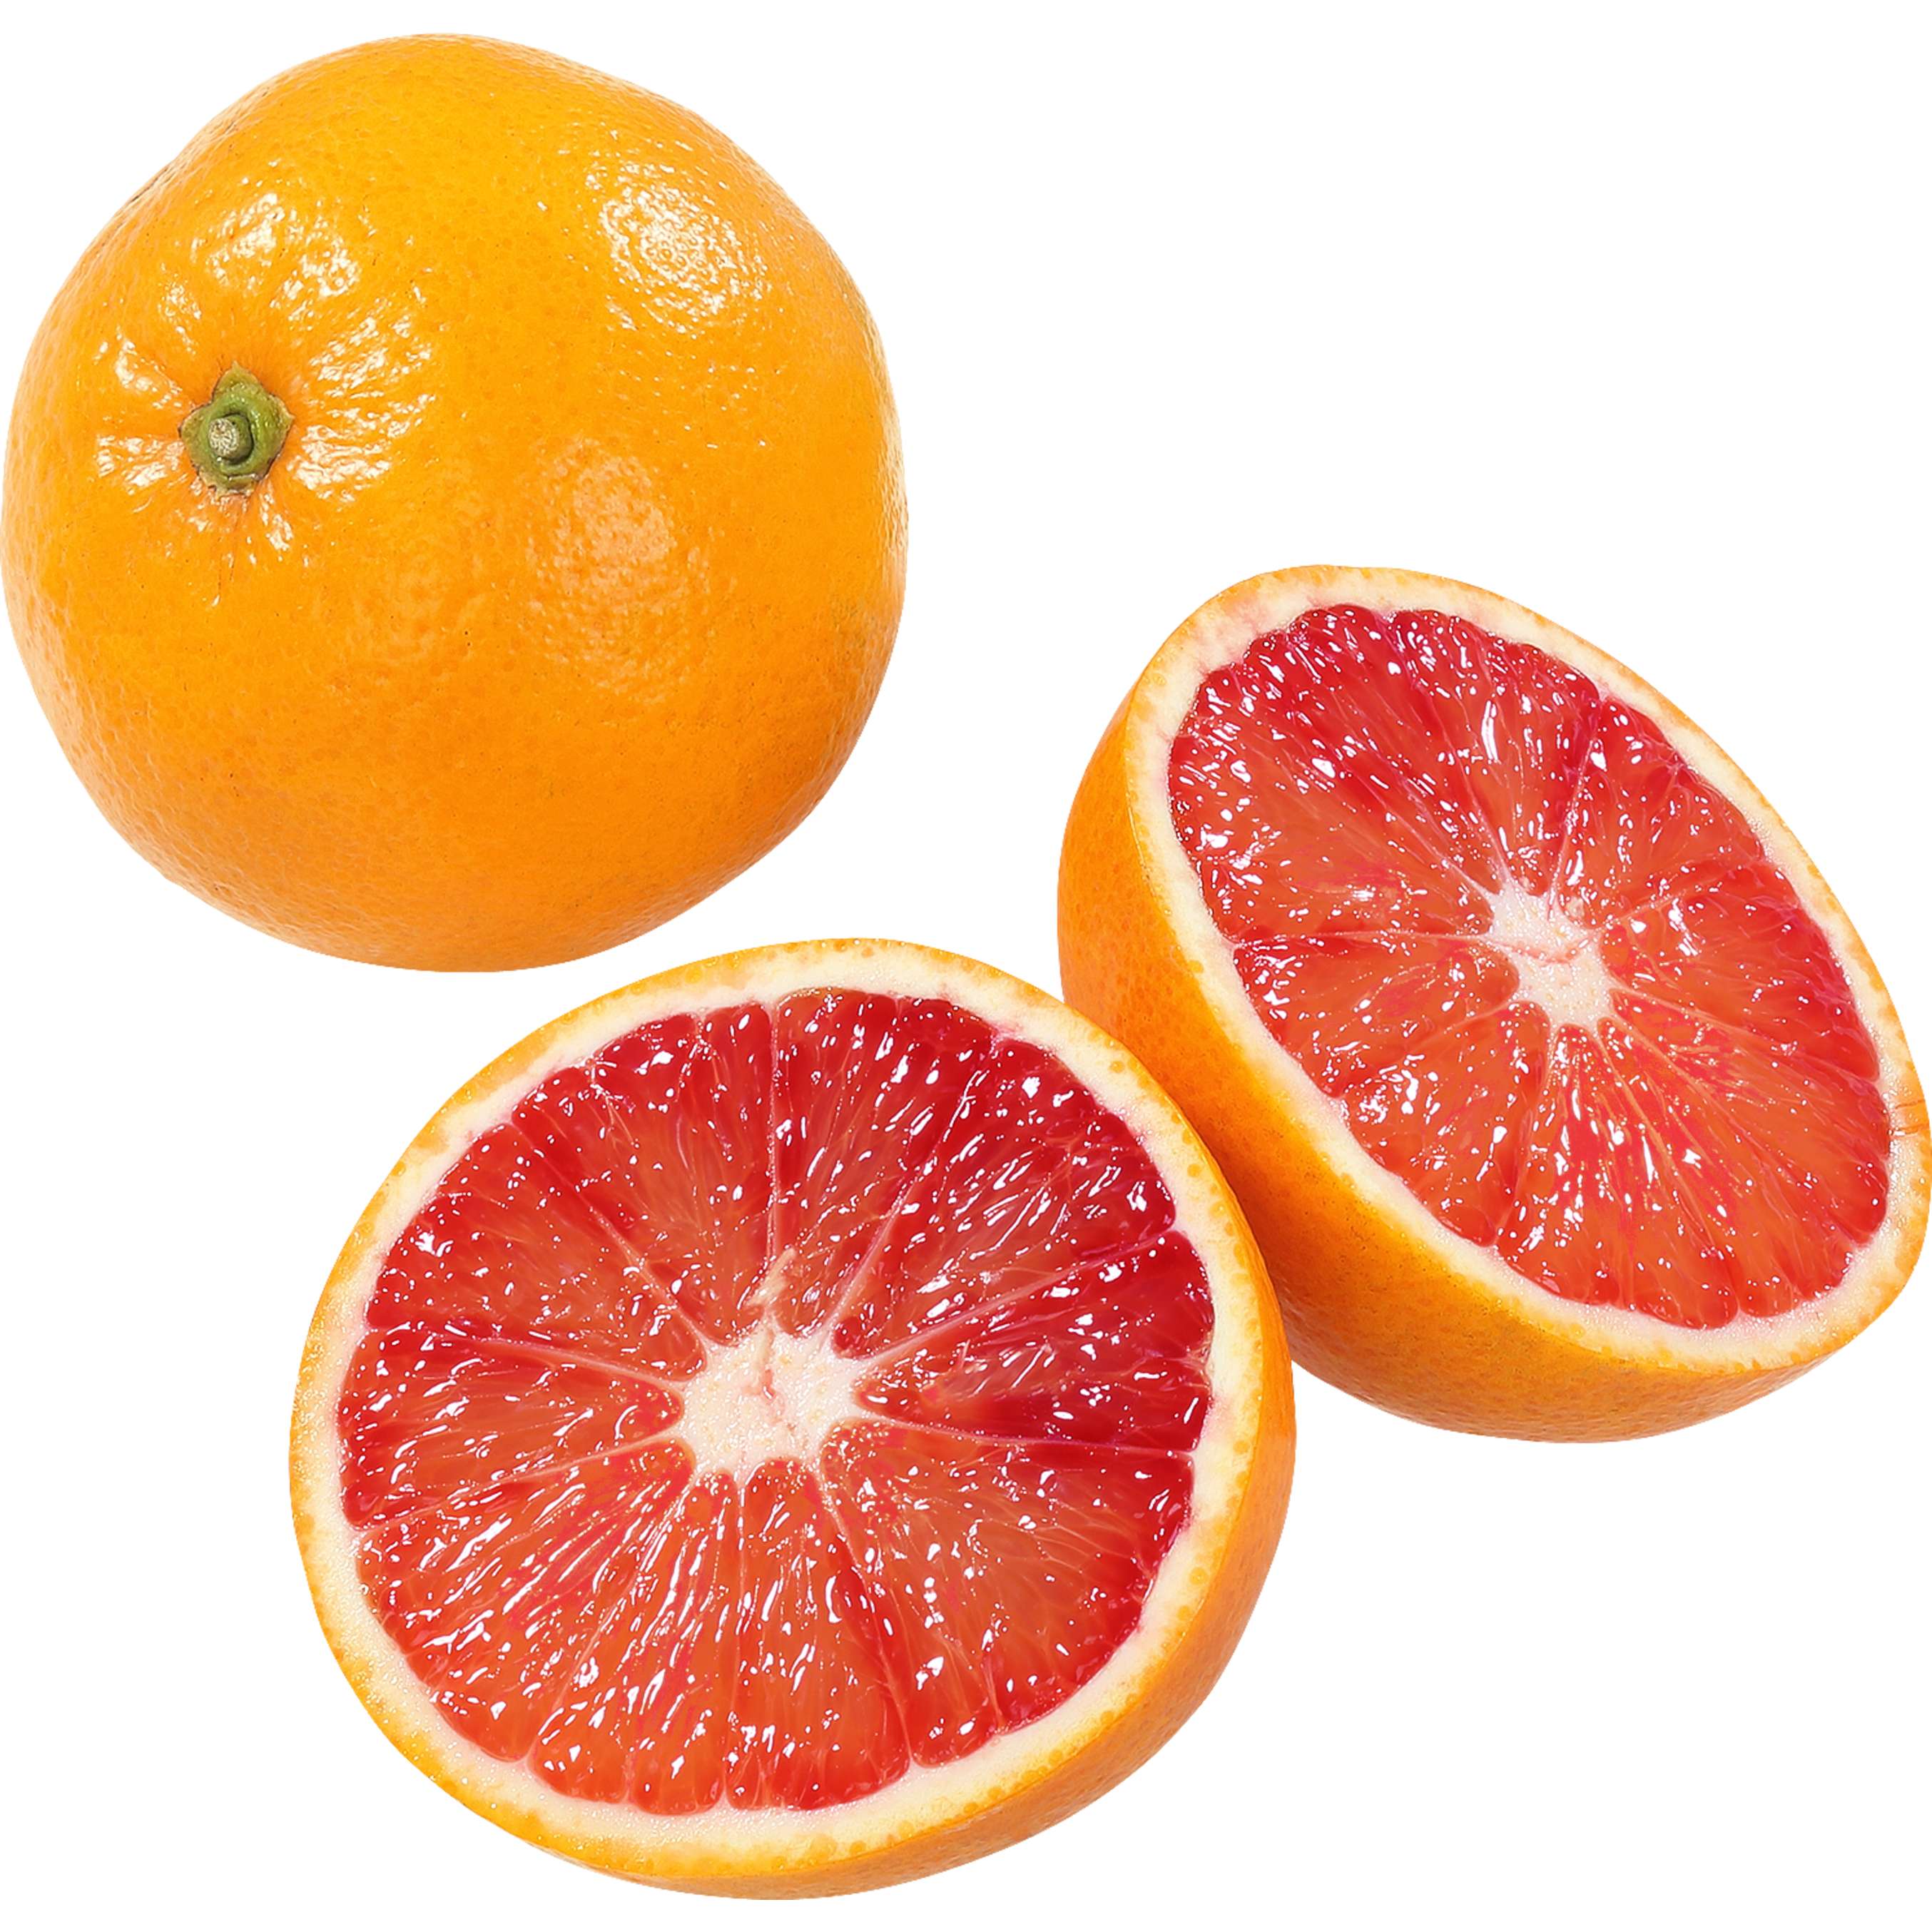 Fotografija ponude Crvene naranče 